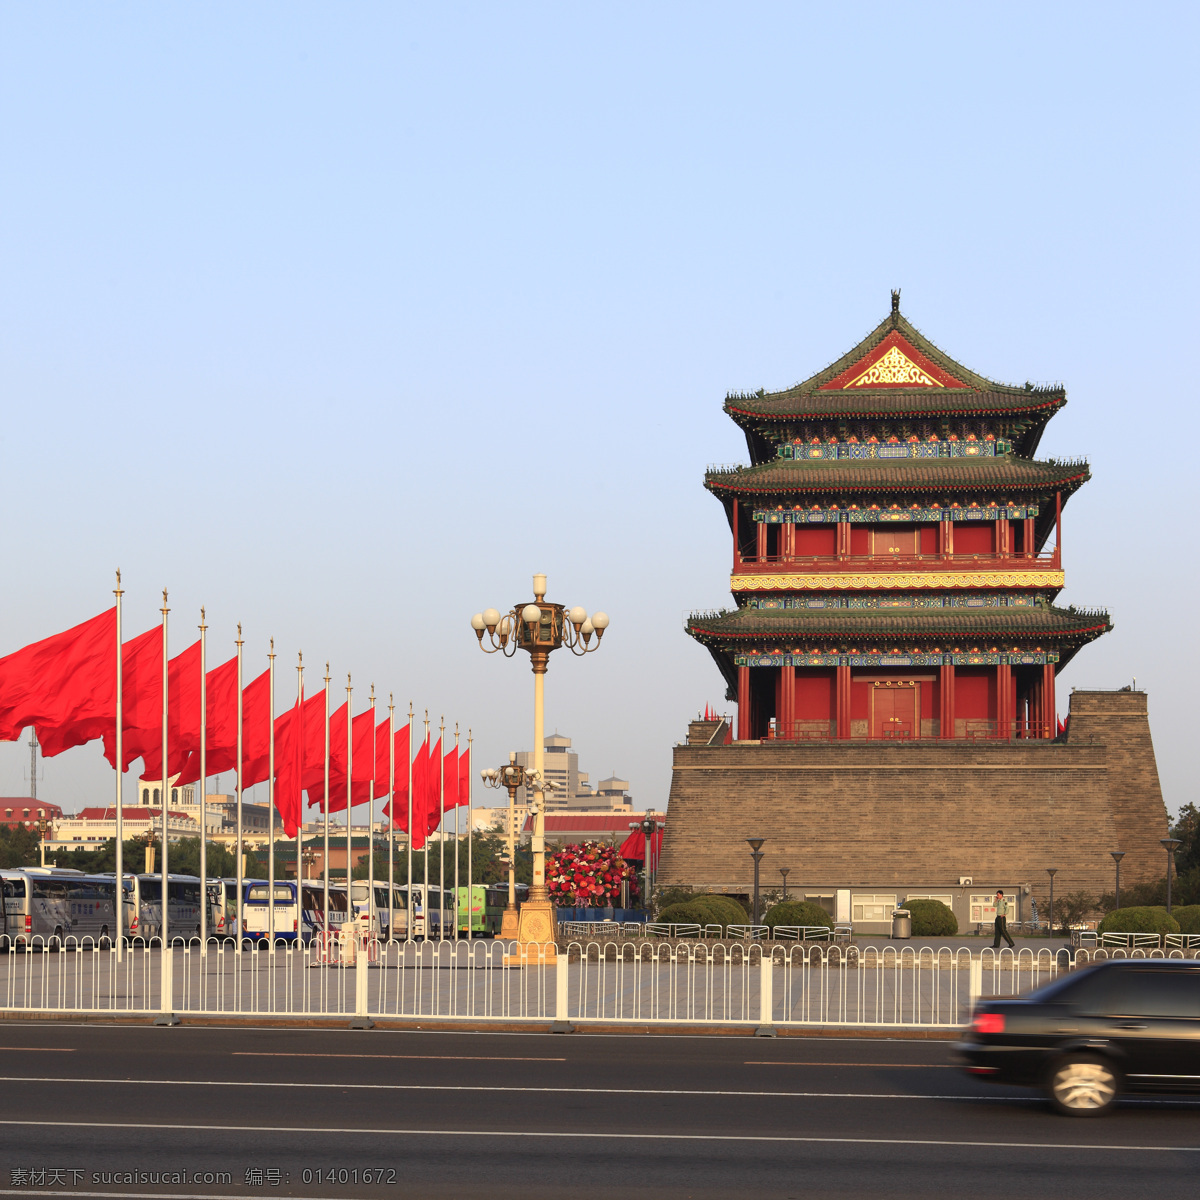 北京正阳门 中国 北京 正阳门 建筑 城楼 建筑摄影 红旗 节日 建筑园林